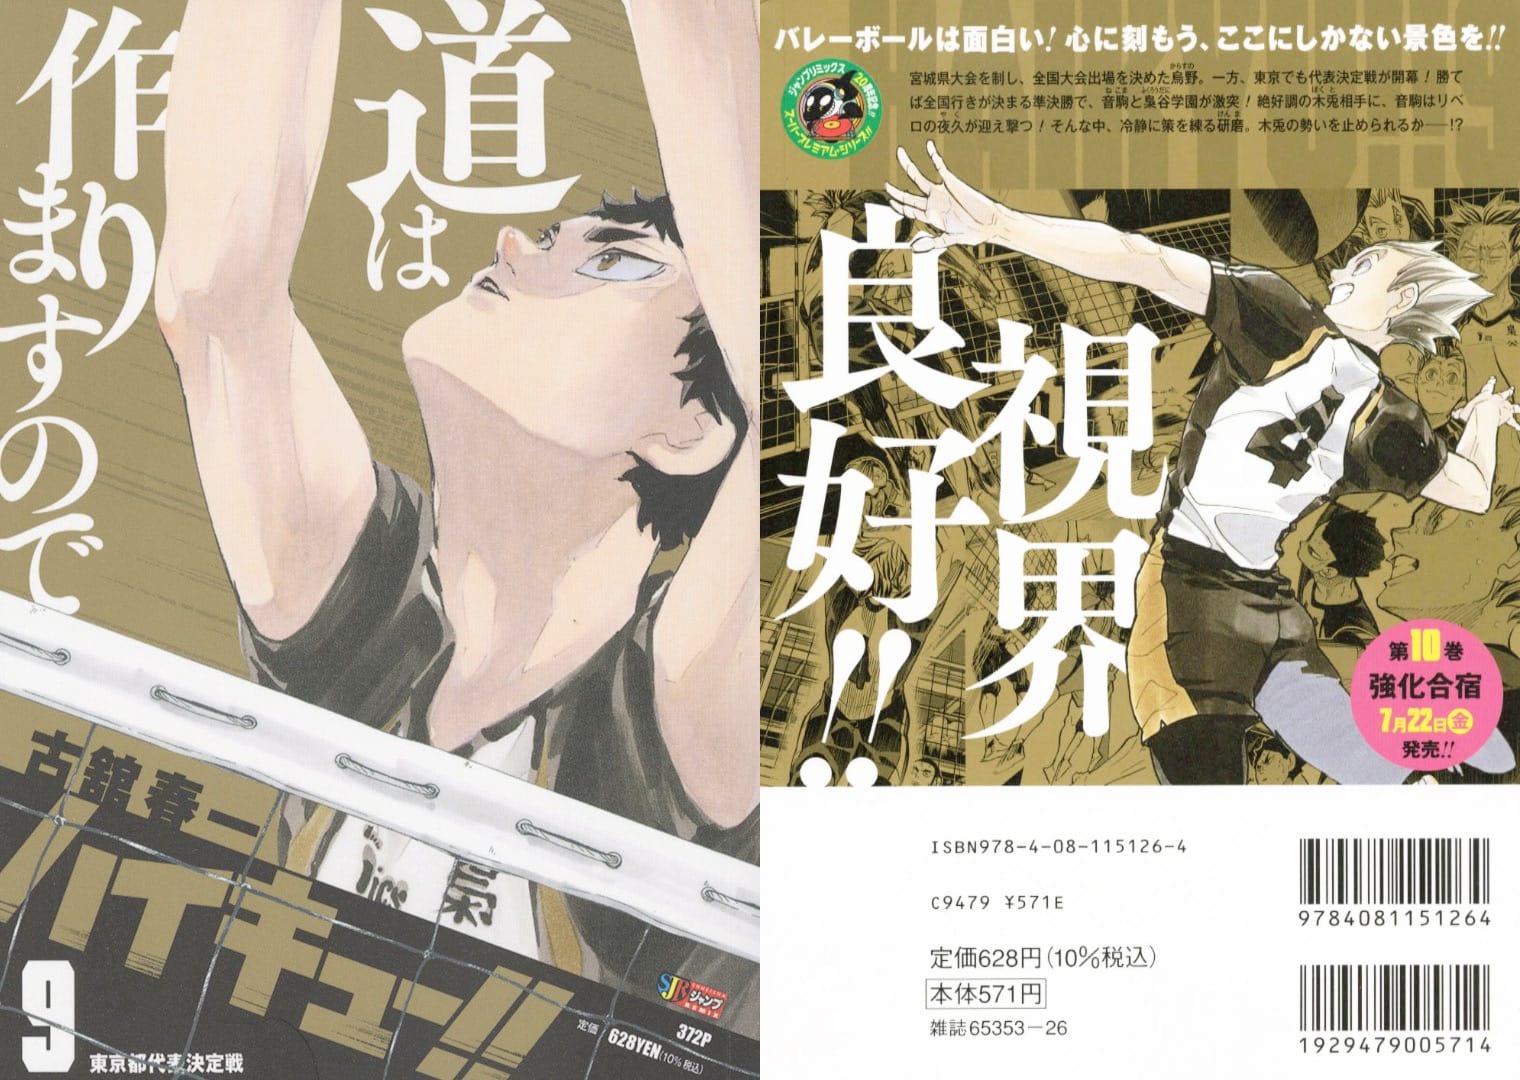 ハイキュー!! リミックス版 第9巻「東京都代表決定戦」7月8日発売!